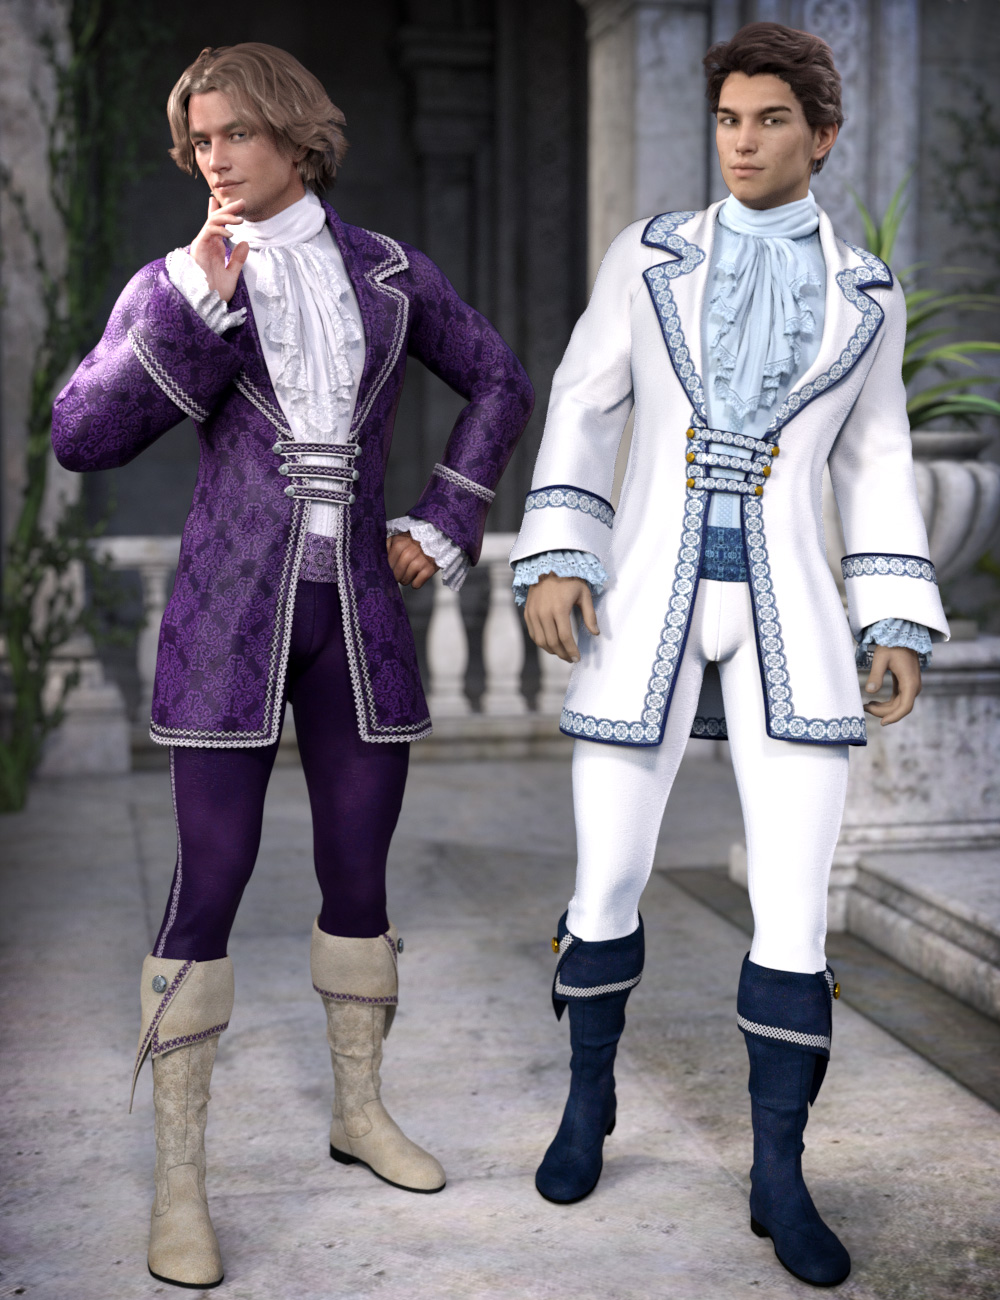 Splendor for Fairytale Prince by: esha, 3D Models by Daz 3D